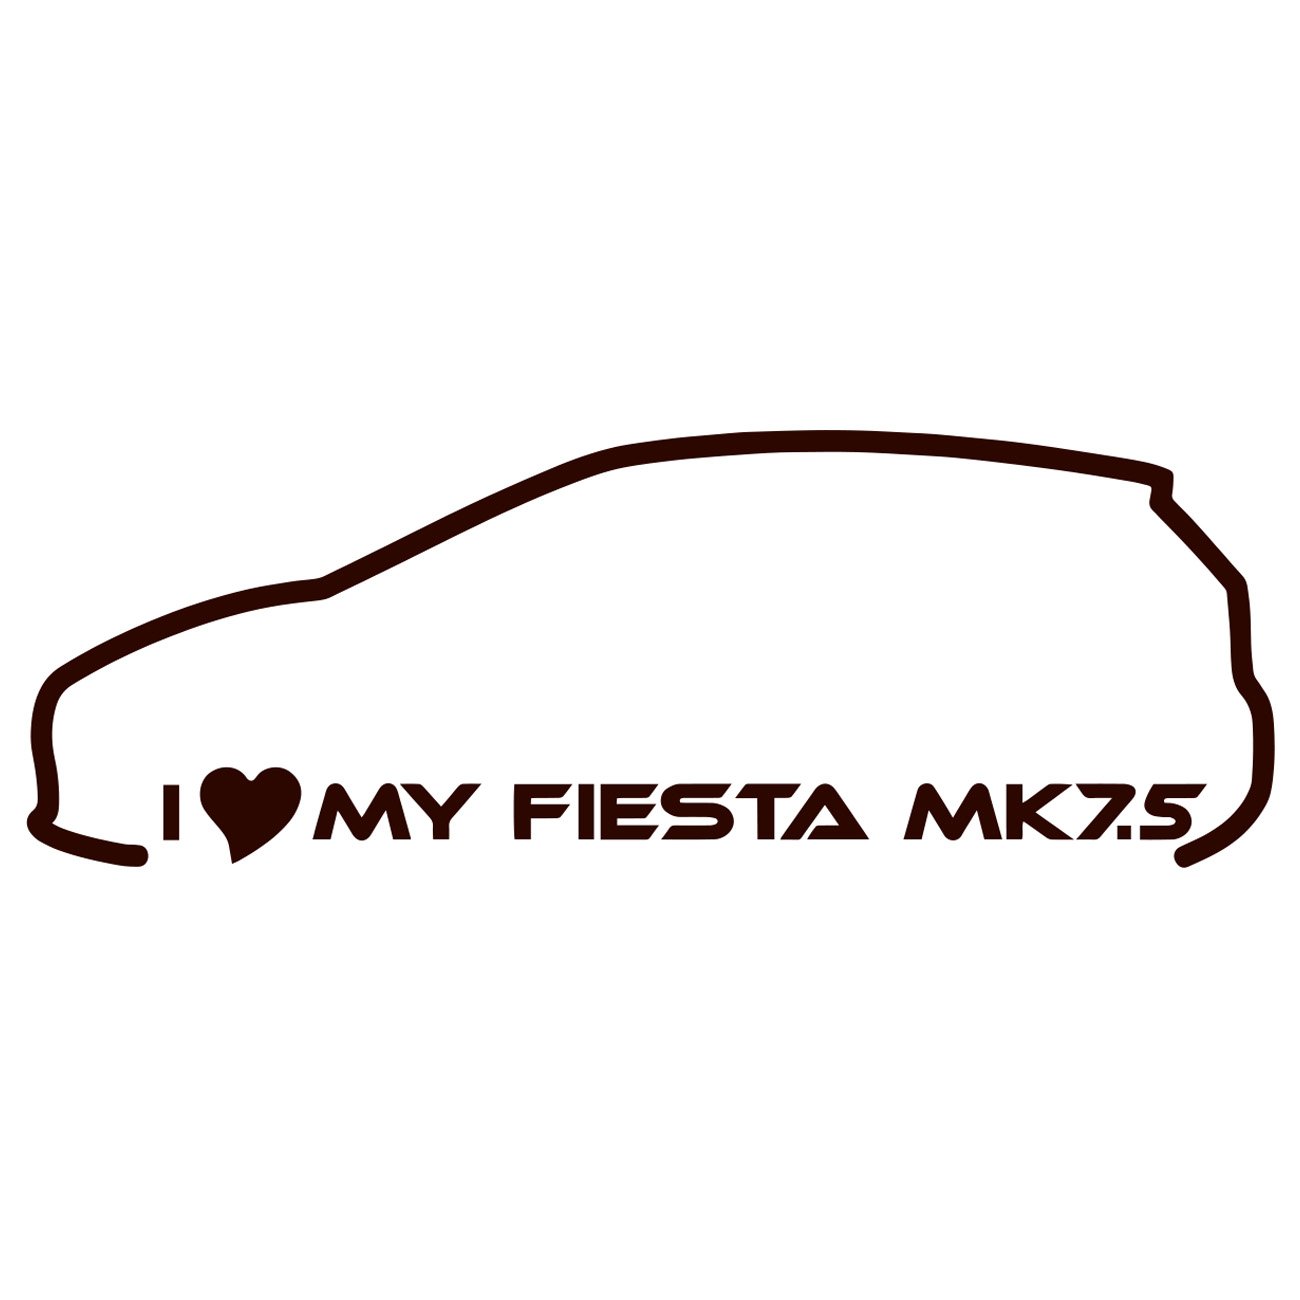 I love my Fiesta MK7.5 - Ford